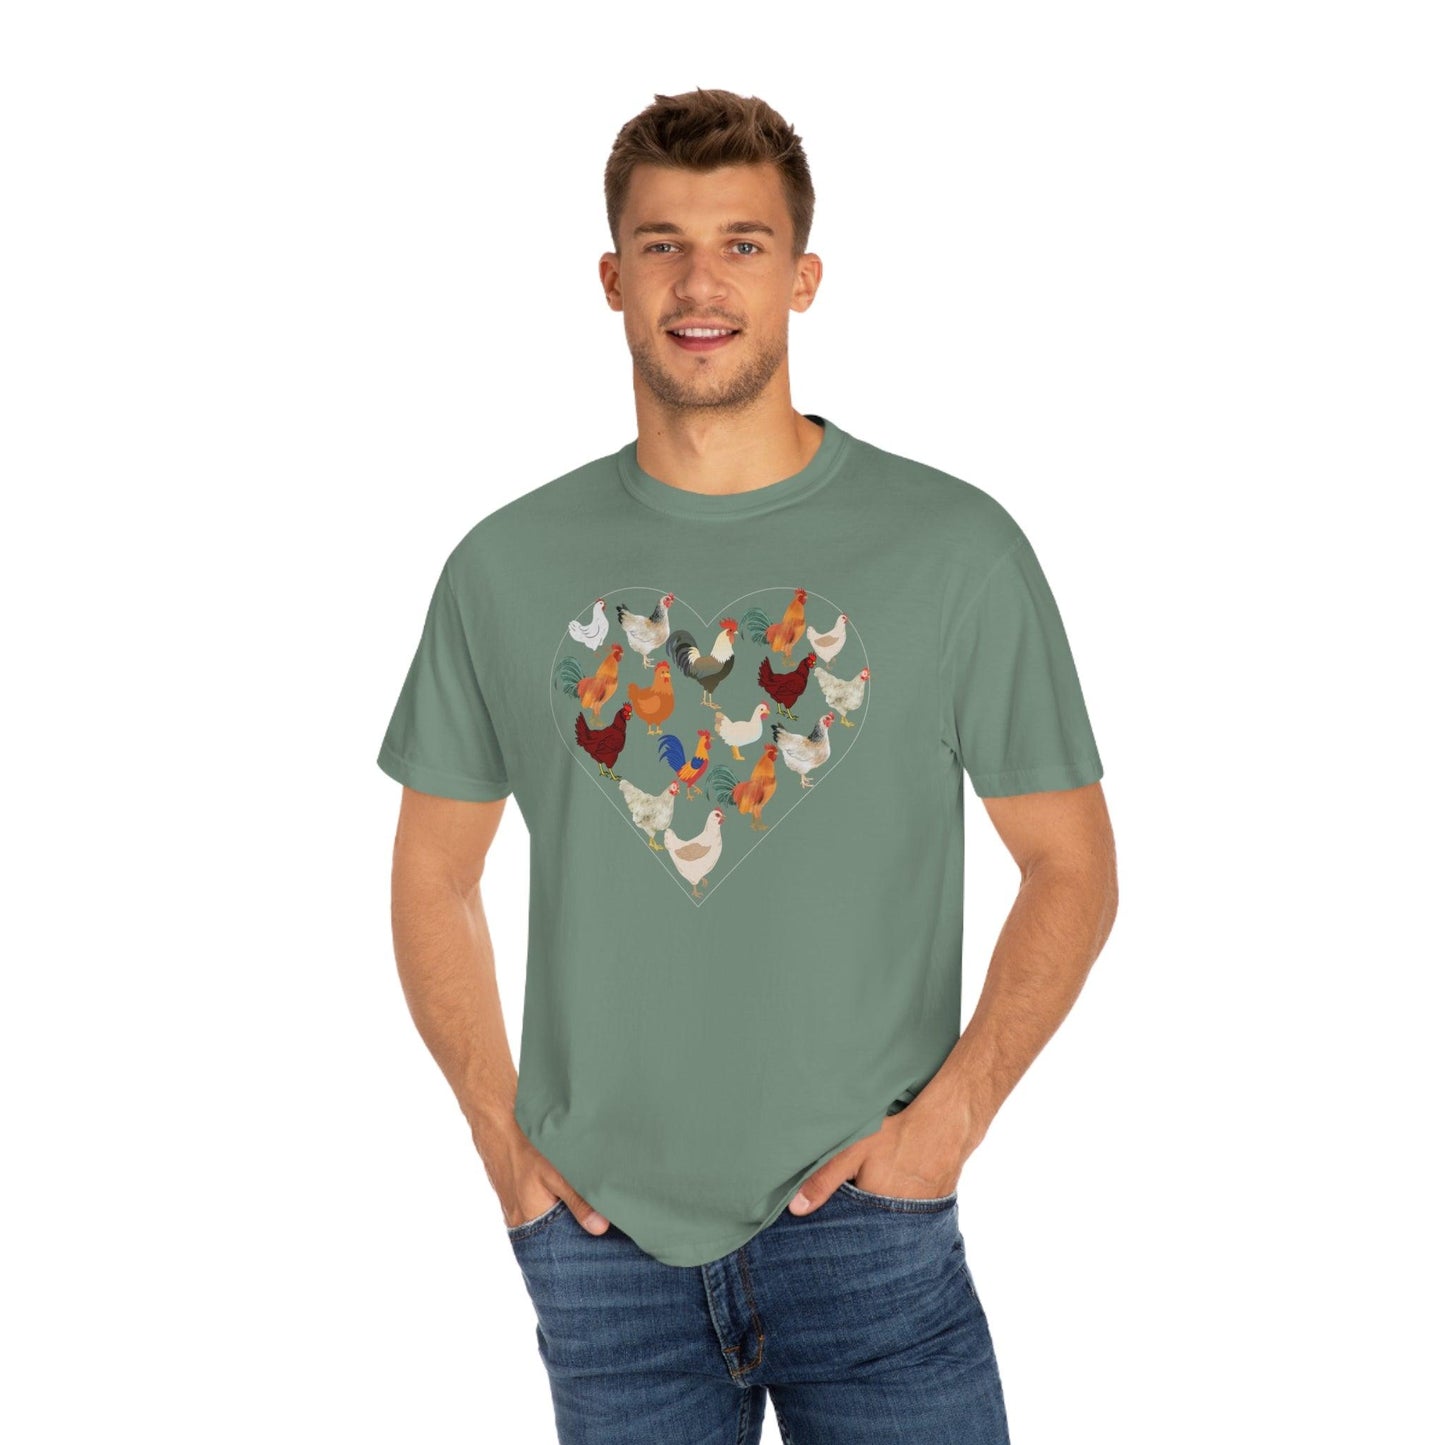 Chicken Shirt Chicken Tee Chicken Owner Gift - Gift For Chicken Lover gift, Chicken lover shirt